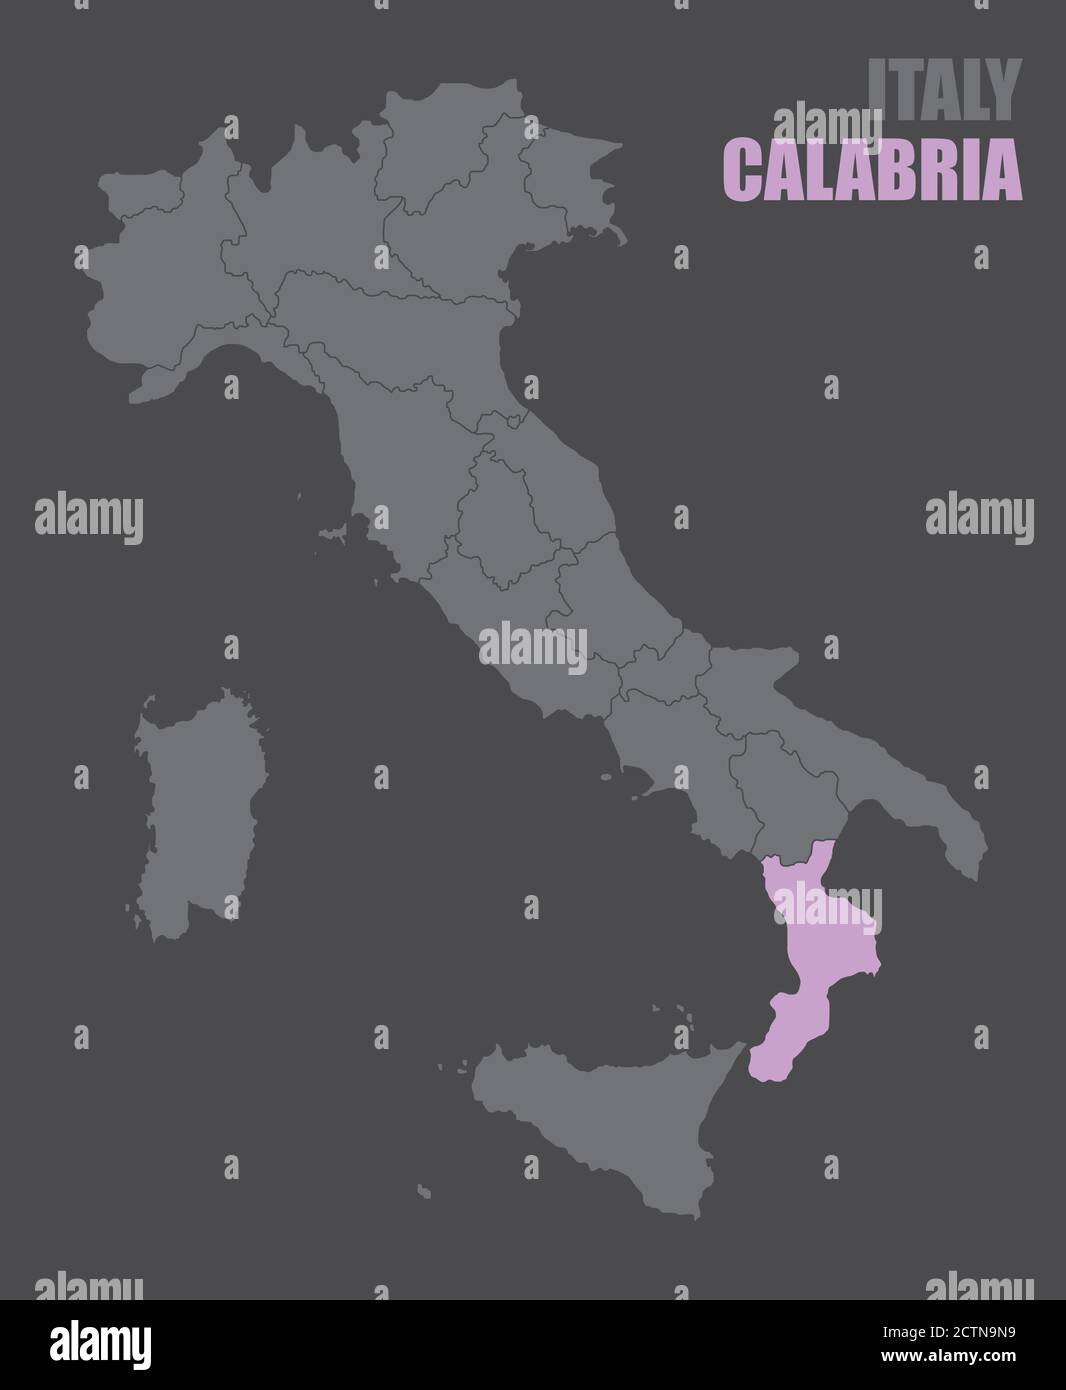 Italy Calabria map Stock Vector